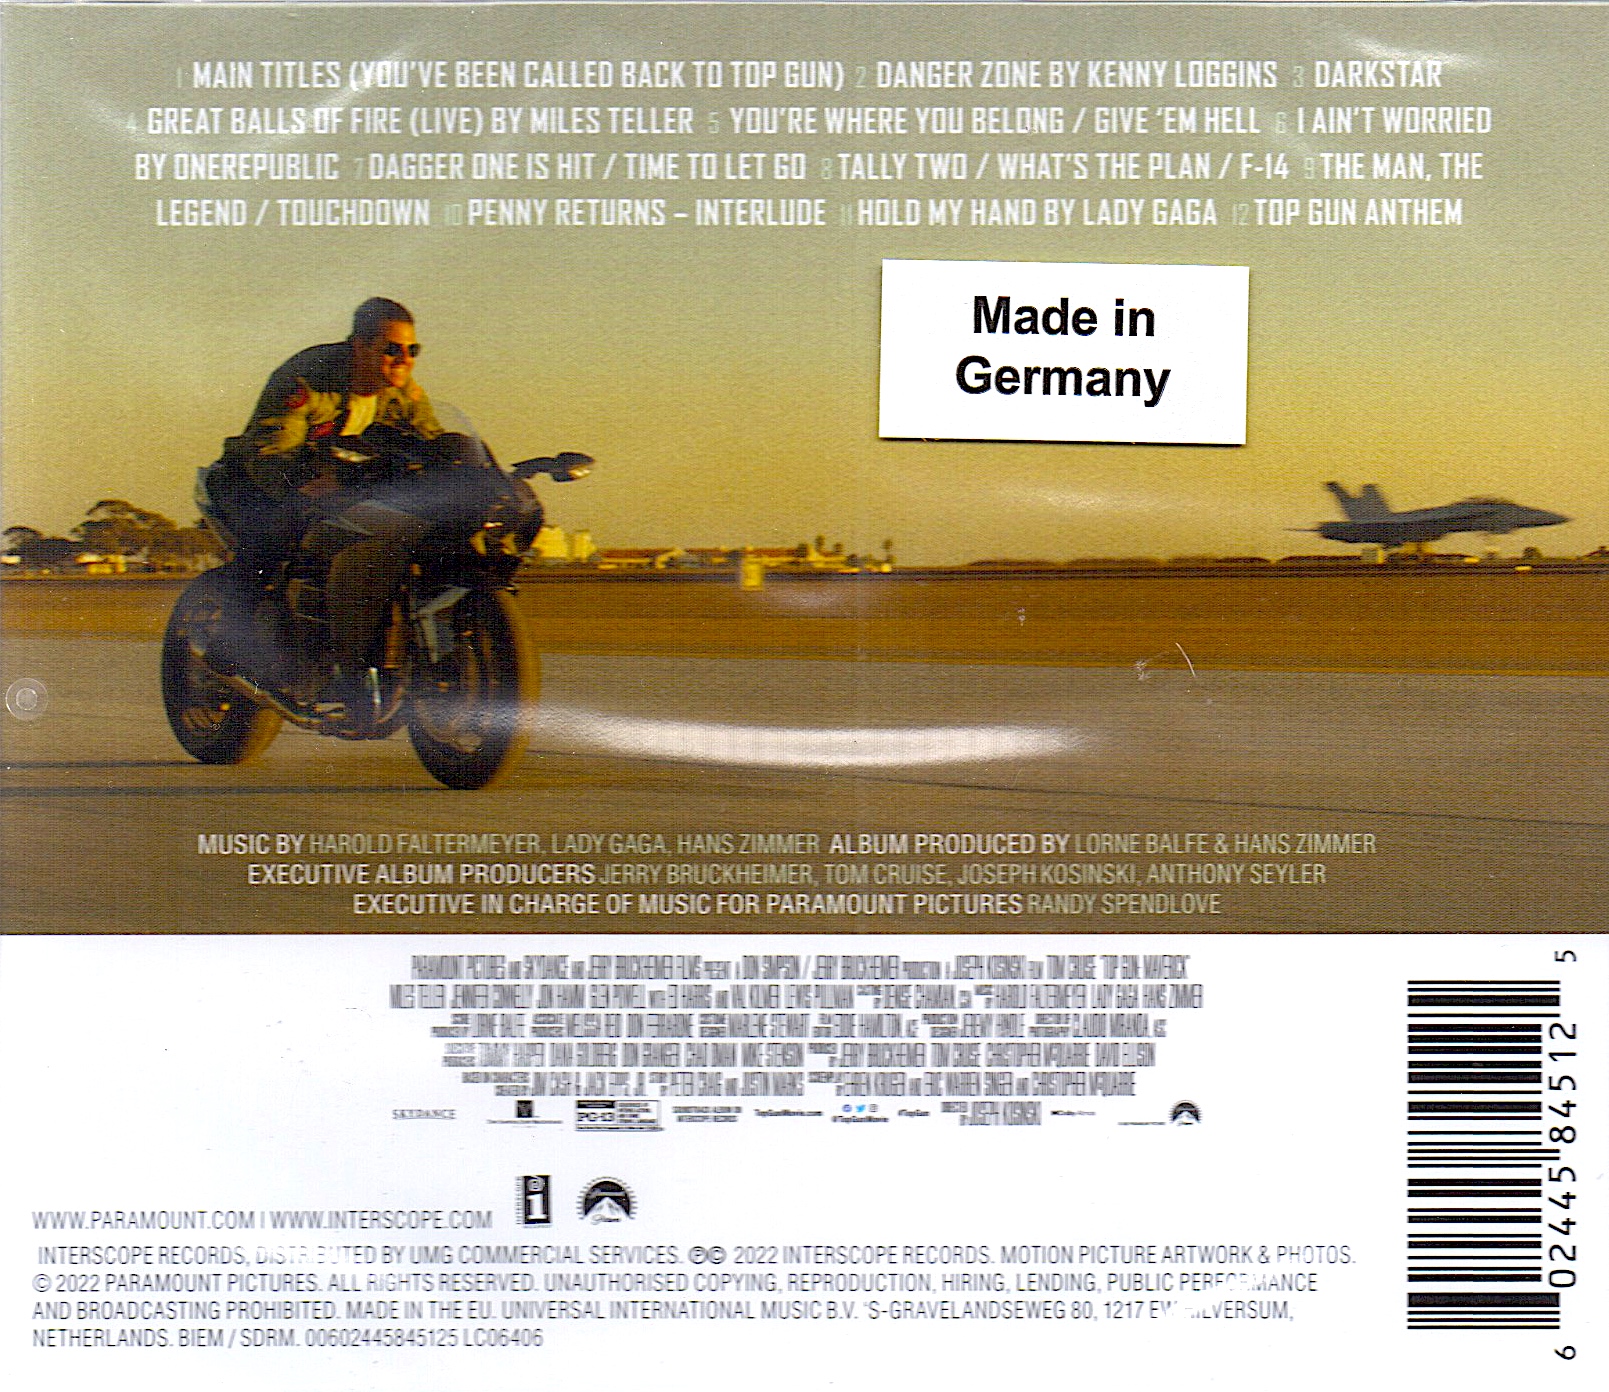 Various - Top Gun: Maverick Soundtrack - CD